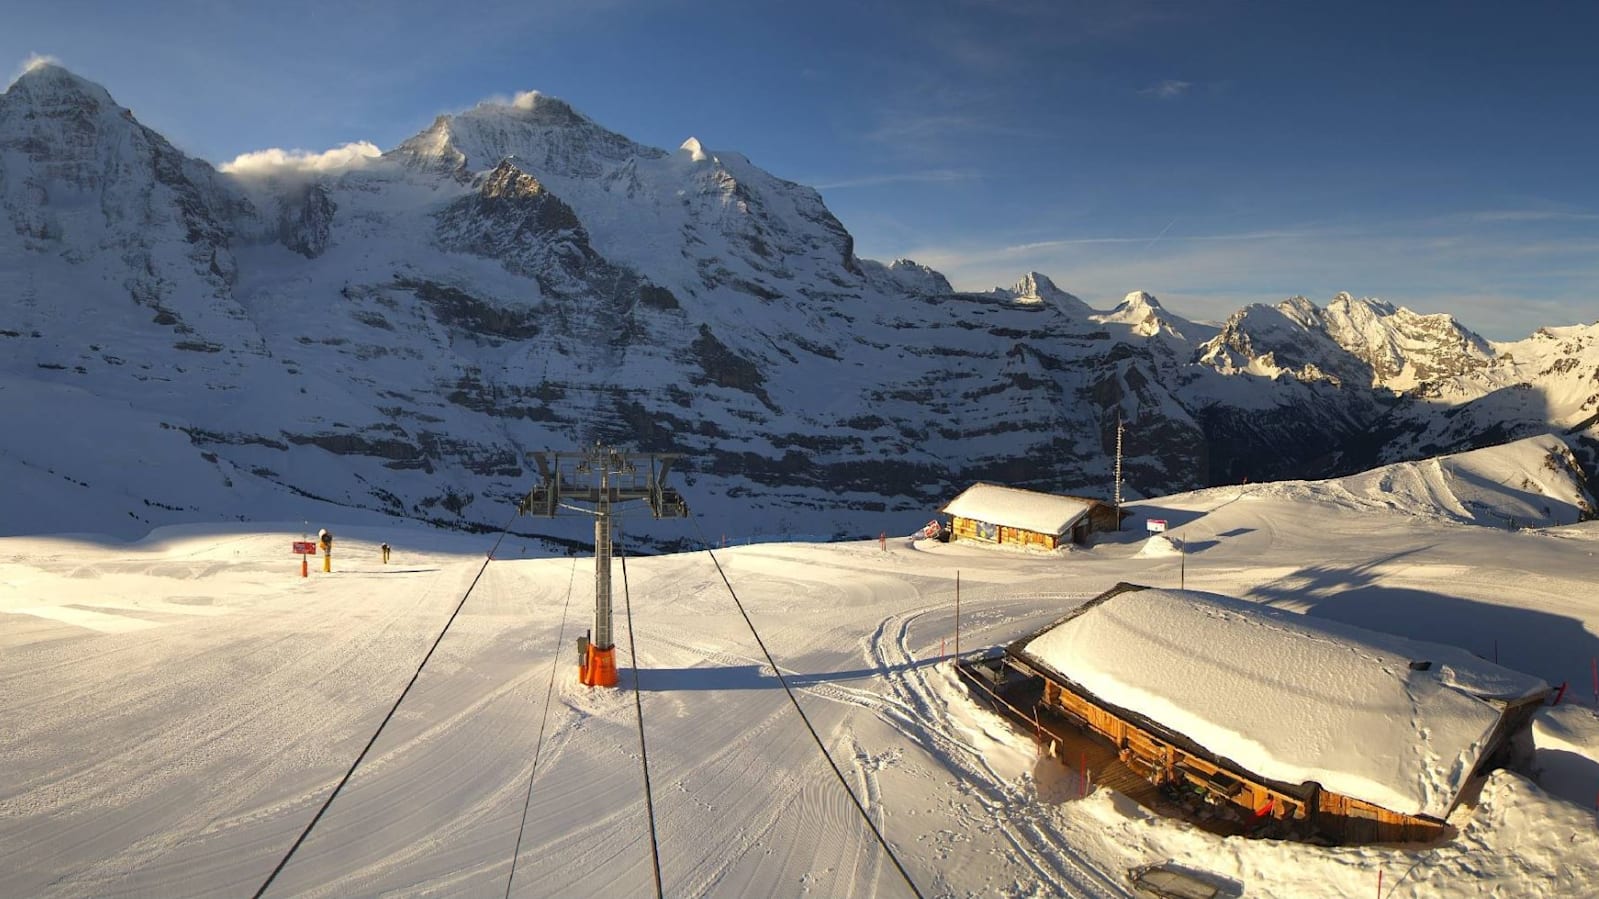 Jungfrau ski region kleine scheidegg wixi lauberhorn